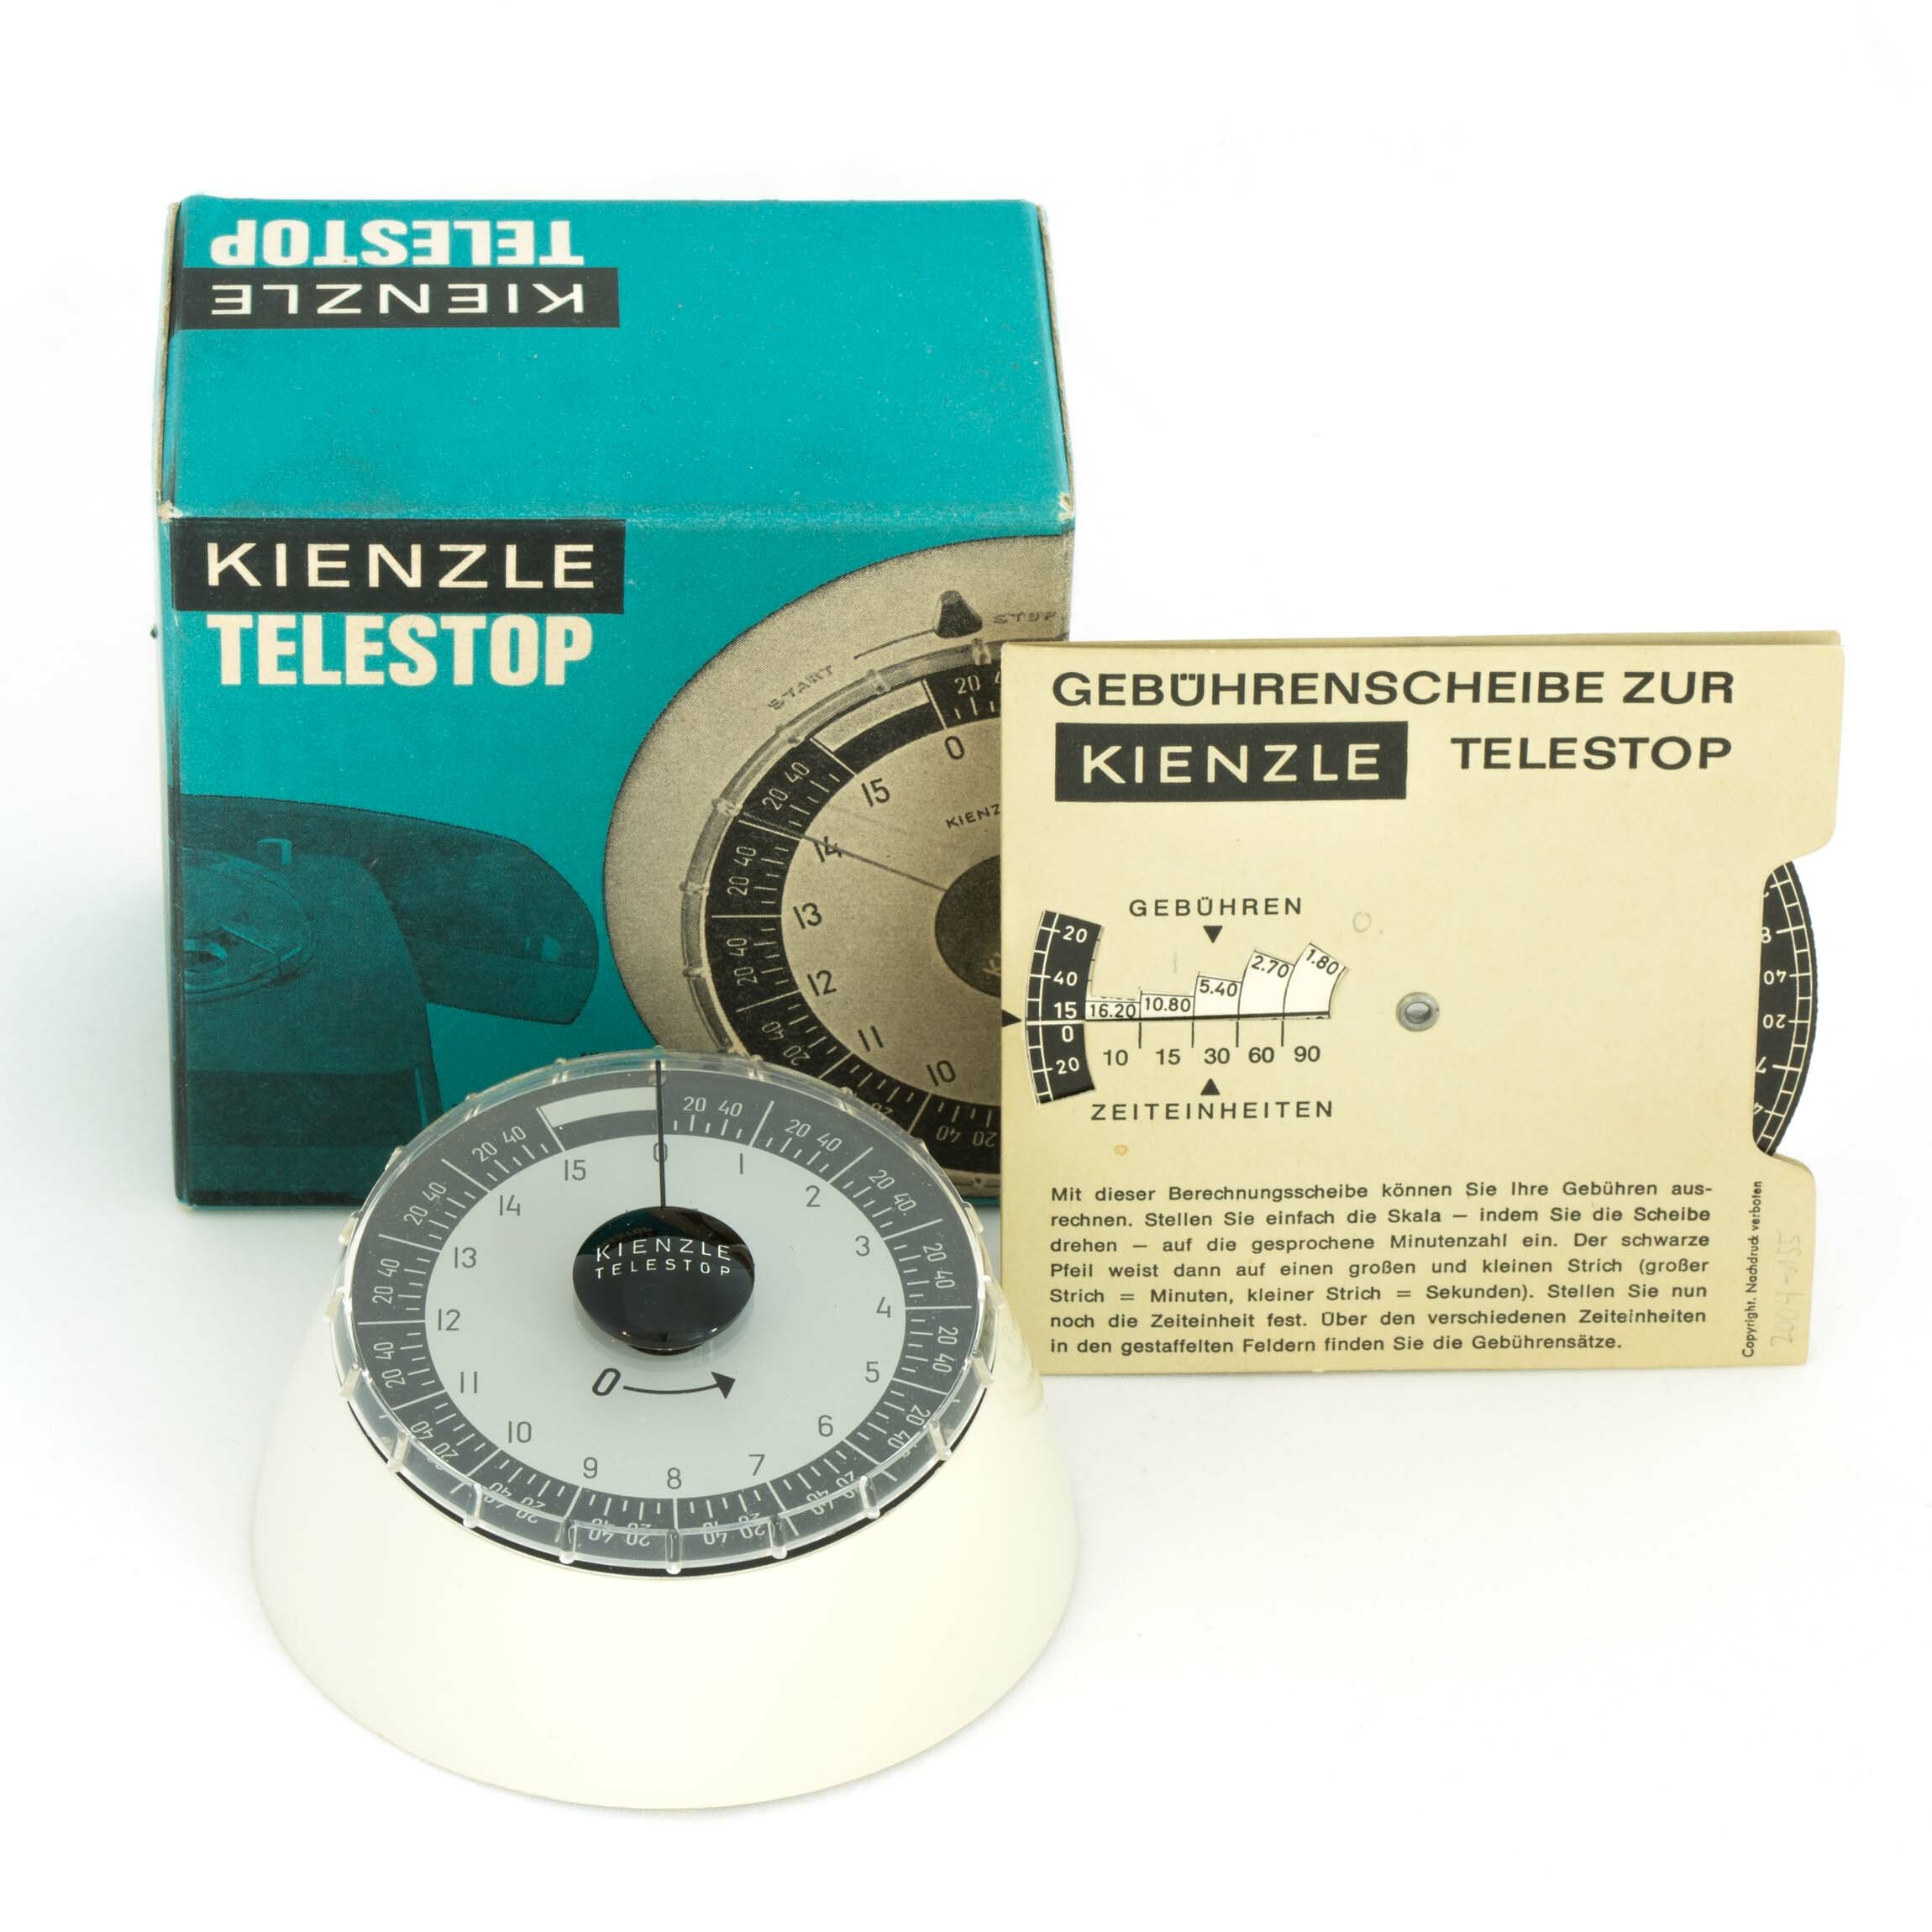 Kienzle Telestop, Kienzle, Schwenningen 1970 (Deutsches Uhrenmuseum CC BY-SA)